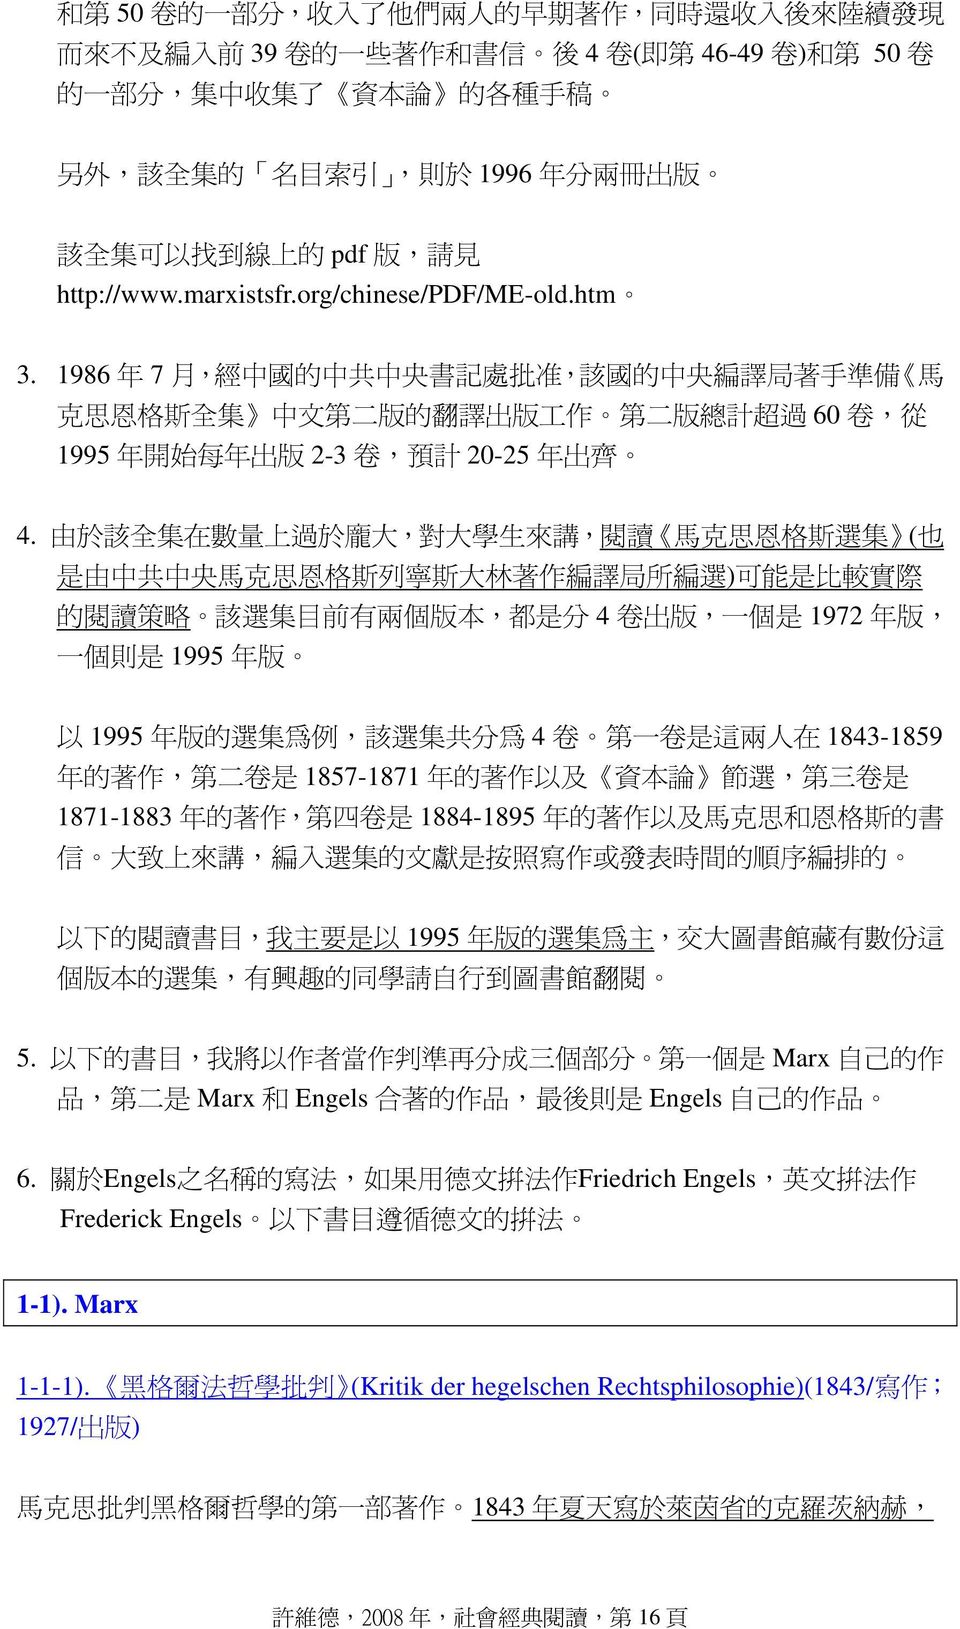 1986 年 7 月, 經 中 國 的 中 共 中 央 書 記 處 批 准, 該 國 的 中 央 編 譯 局 著 手 準 備 馬 克 思 恩 格 斯 全 集 中 文 第 二 版 的 翻 譯 出 版 工 作 第 二 版 總 計 超 過 60 卷, 從 1995 年 開 始 每 年 出 版 2-3 卷, 預 計 20-25 年 出 齊 4.